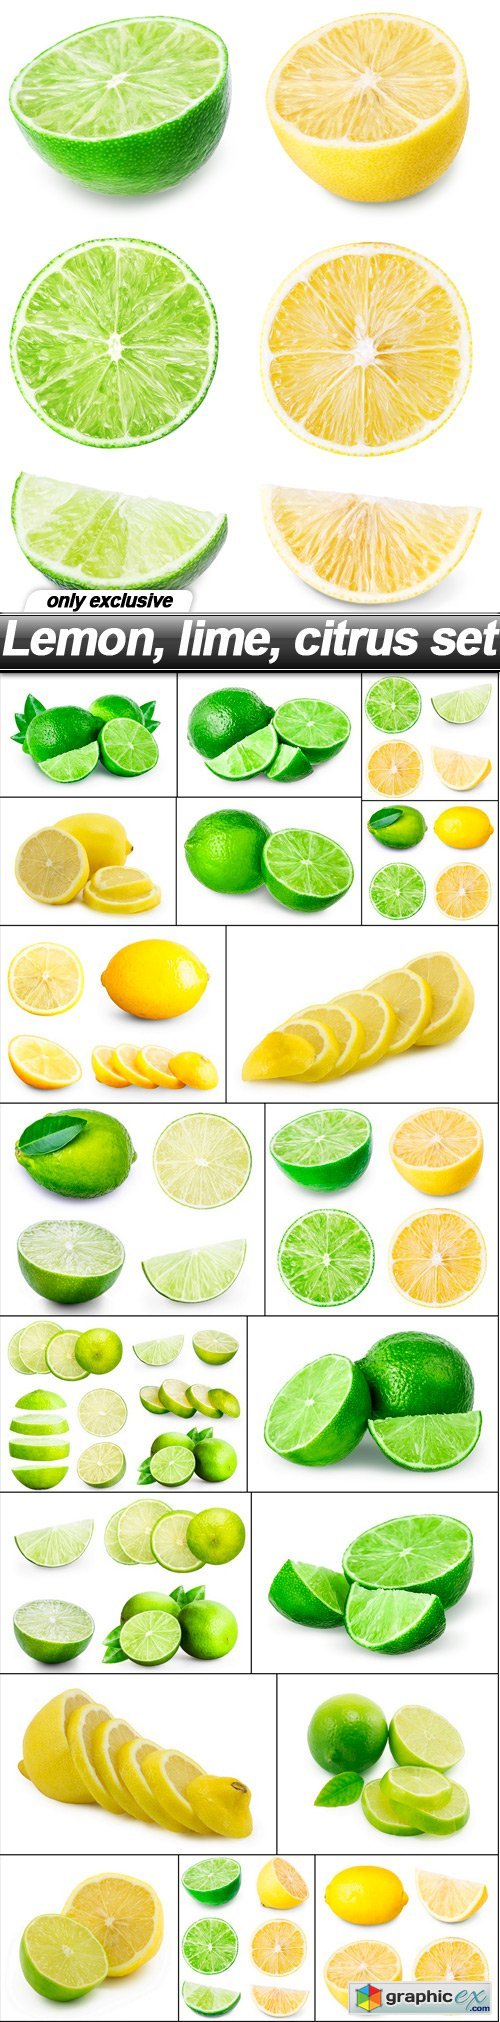 Lemon, lime, citrus set - 20 UHQ JPEG